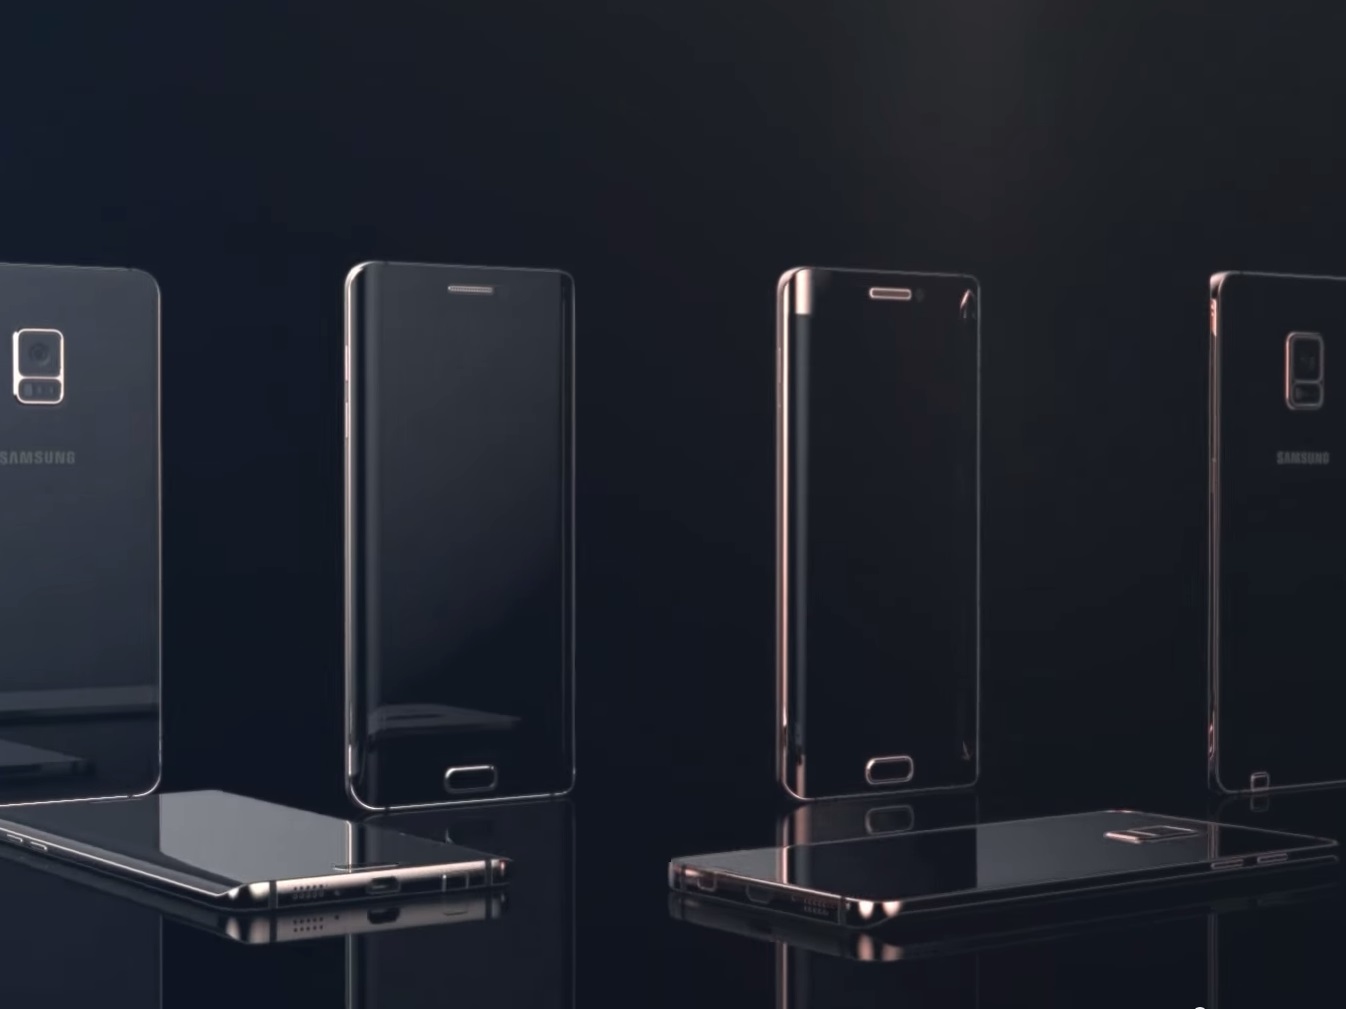 Samsung-Galaxy-Note-5-edge-renders (6) (1)